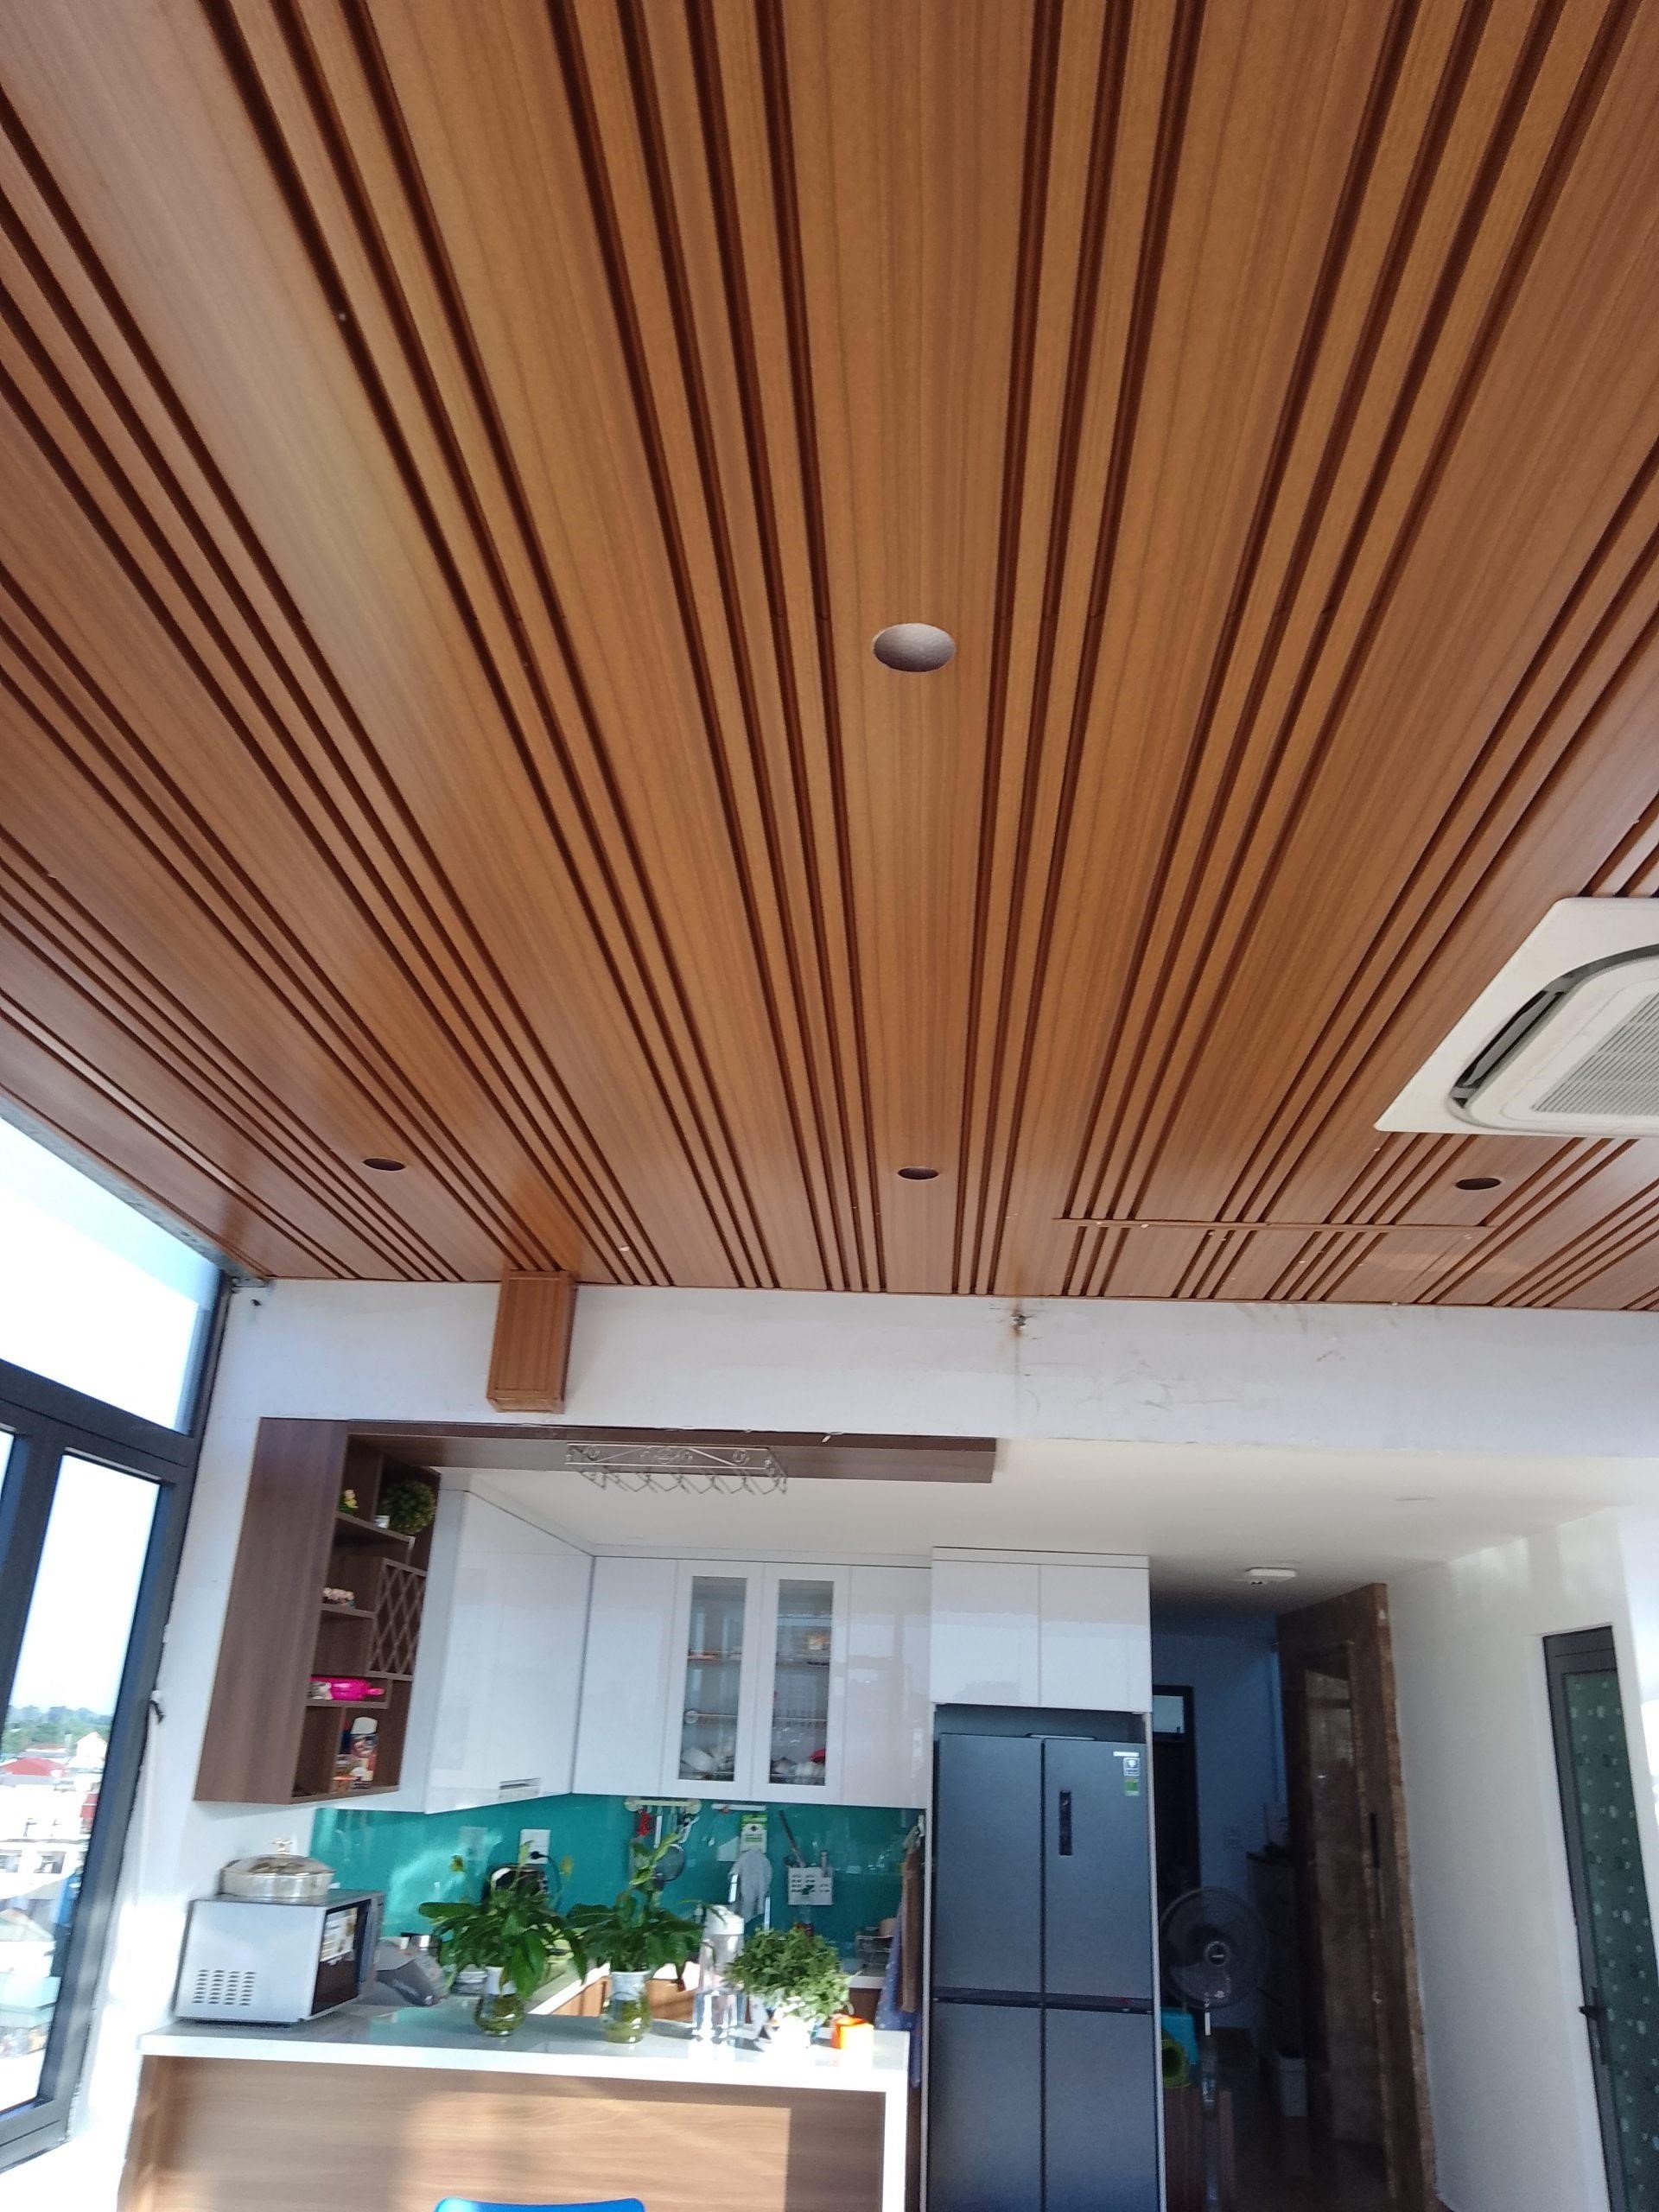 Viết lại: Trong không gian bếp, chúng ta có thể sử dụng sản phẩm làm từ trần nhôm giả gỗ B tổ hợp. Điều này sẽ giúp cho không gian trở nên đẹp mắt và tạo cảm giác ấm áp, giống như đang sử dụng các sản phẩm bằng gỗ thật.